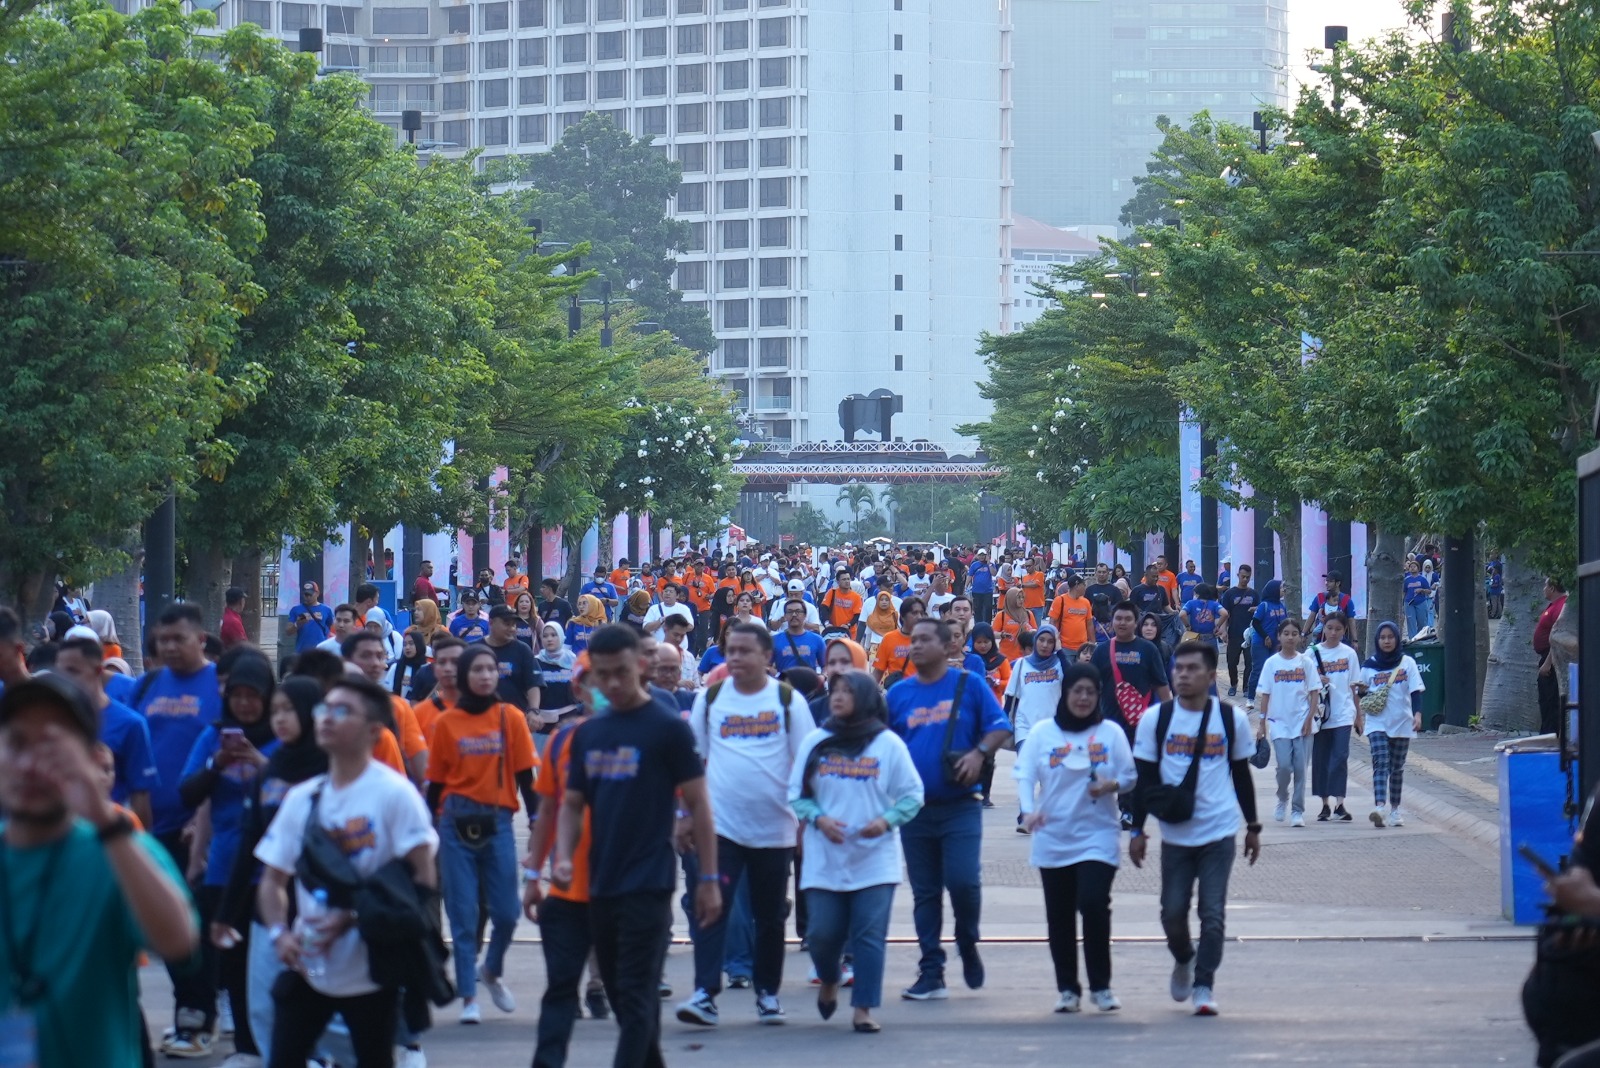 Rayakan HUT ke-128 BRI, Lebih Dari 50 Ribu Insan BRILiaN Berkumpul di Gelora Bung Karno